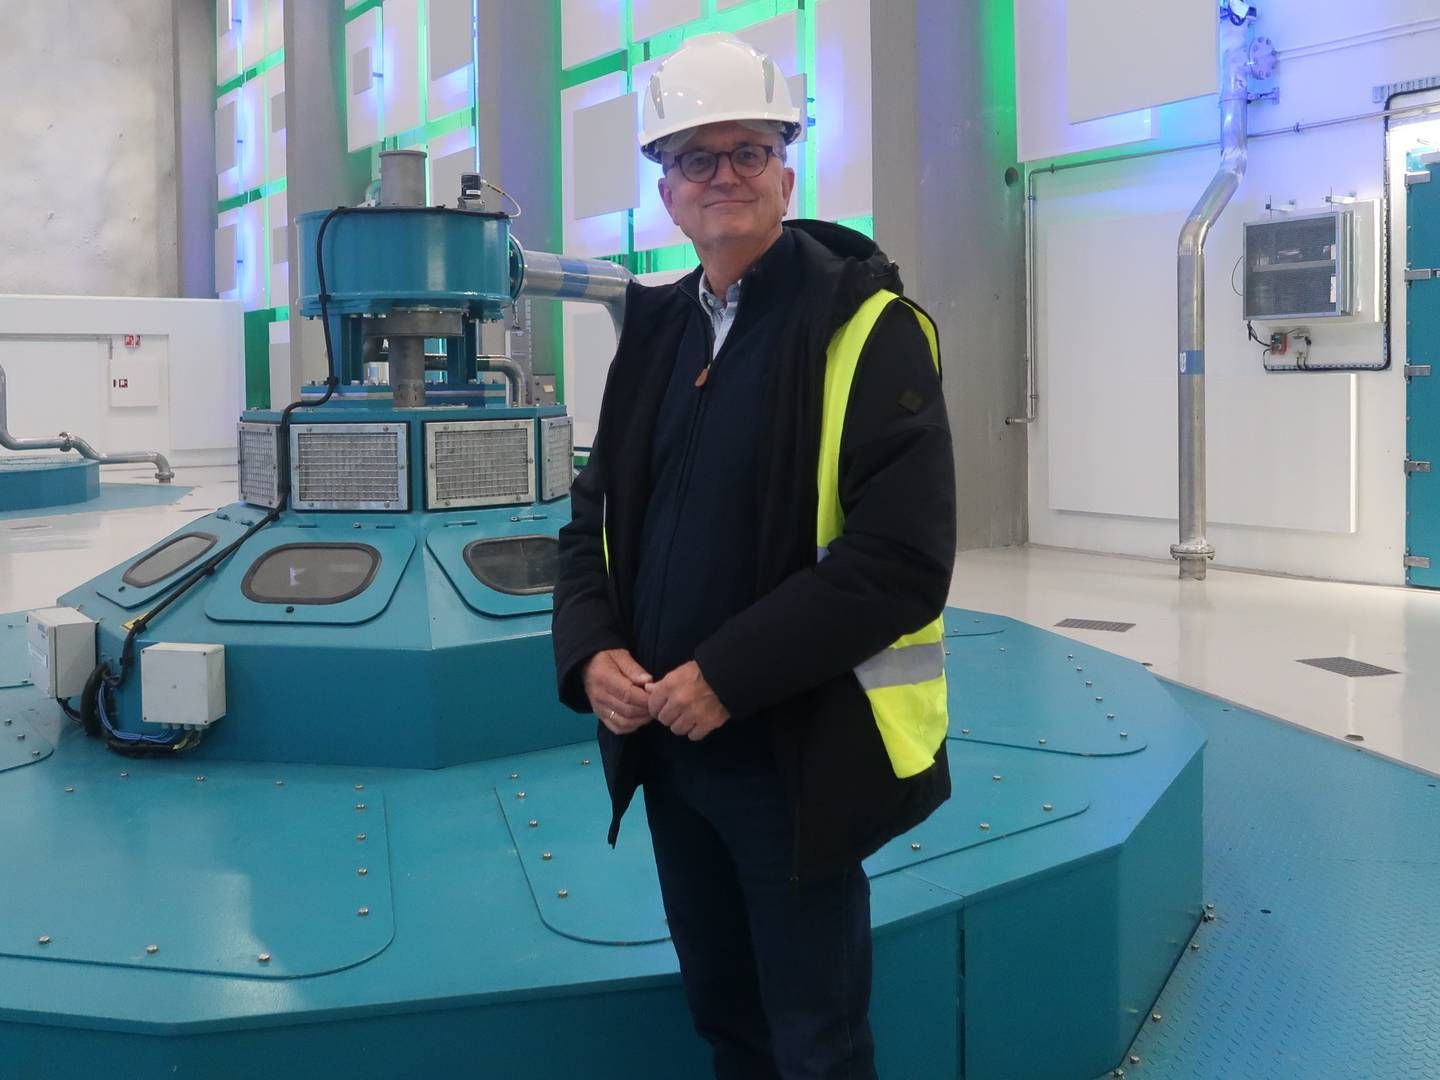 FORNØYD: Eimund Nygaard, konsernsjefen i Lyse, er førnøyd med at høyprisbidraget fjernes allerede nå, og lover milliardinvesteringer i oppgradering av vannkraftverk i Røldal-Suldal. | Foto: Linda Sandvik